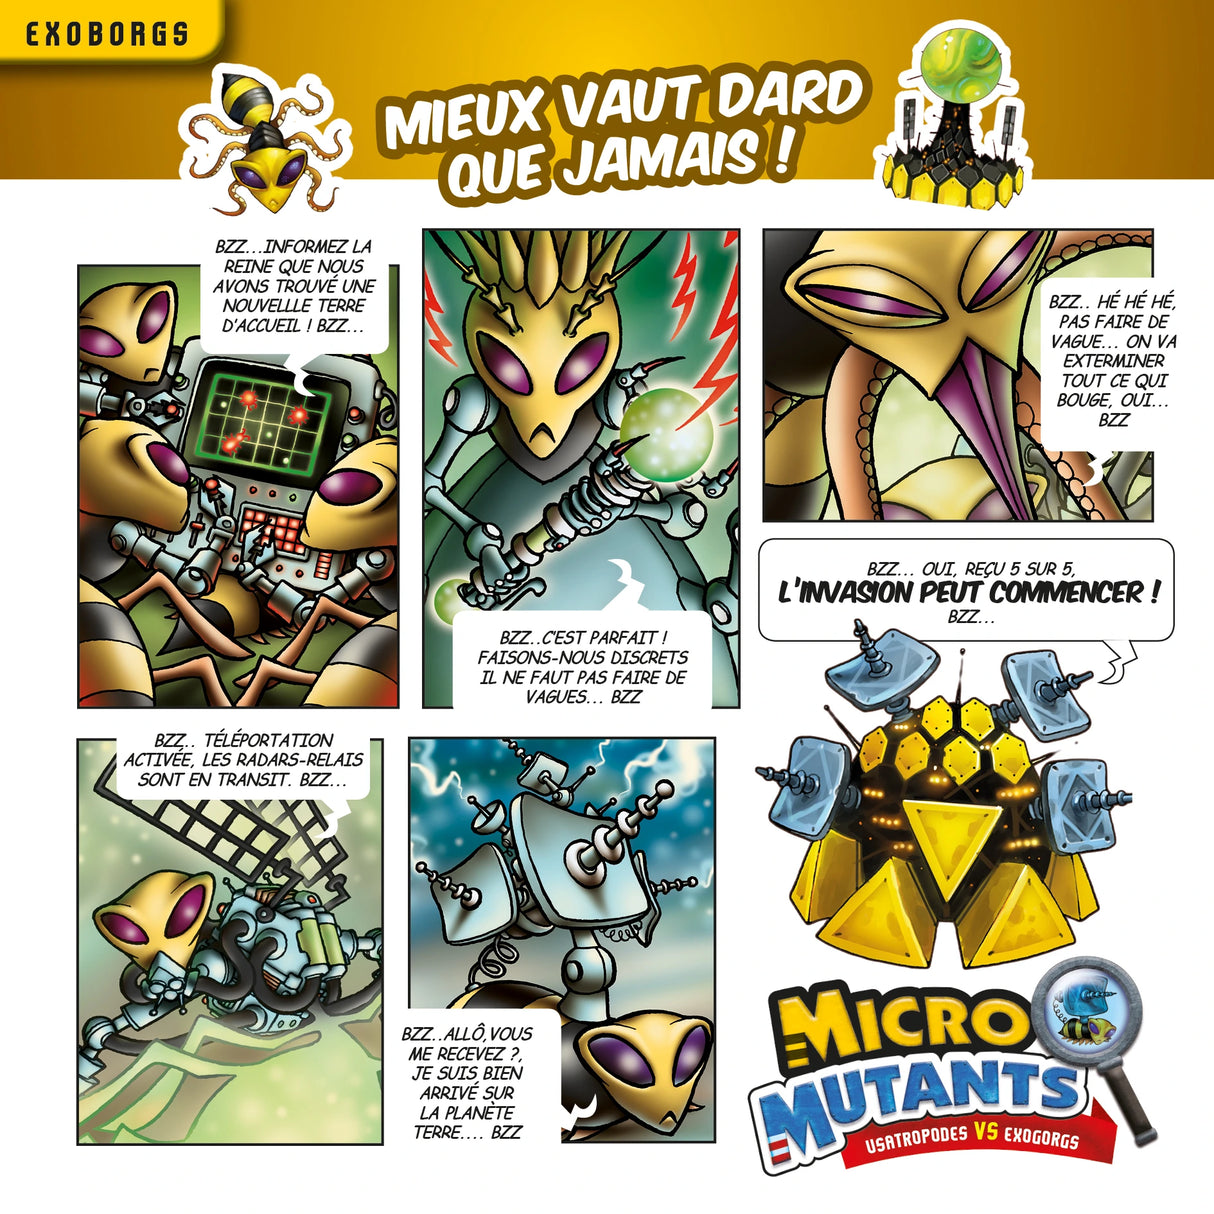 Micro Mutants - Usatropodes VS Exoborgs